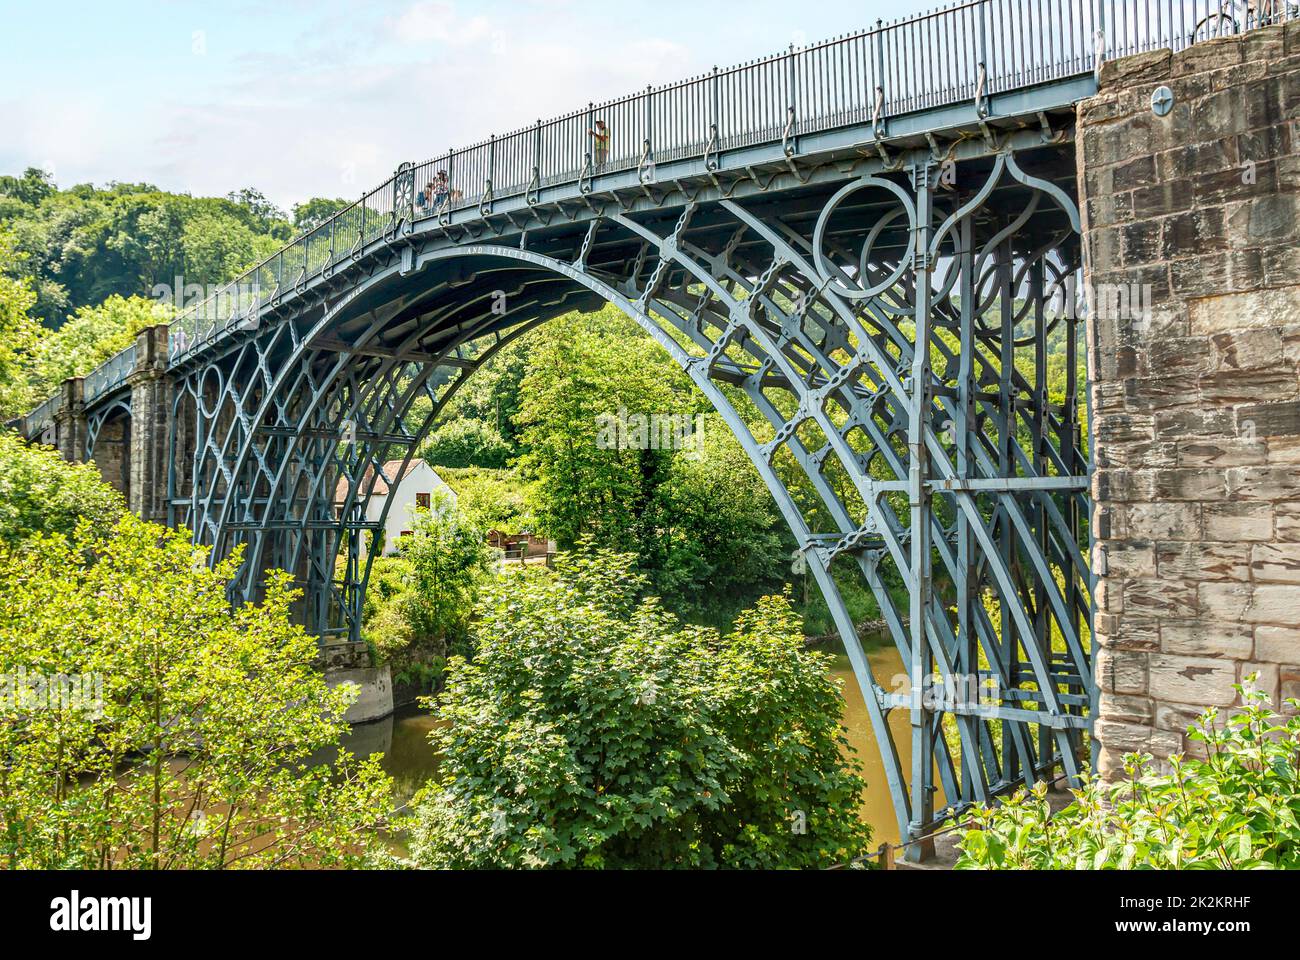 El puente de hierro cruza el río Severn en el desfiladero de Ironbridge en Shropshire, Inglaterra Foto de stock